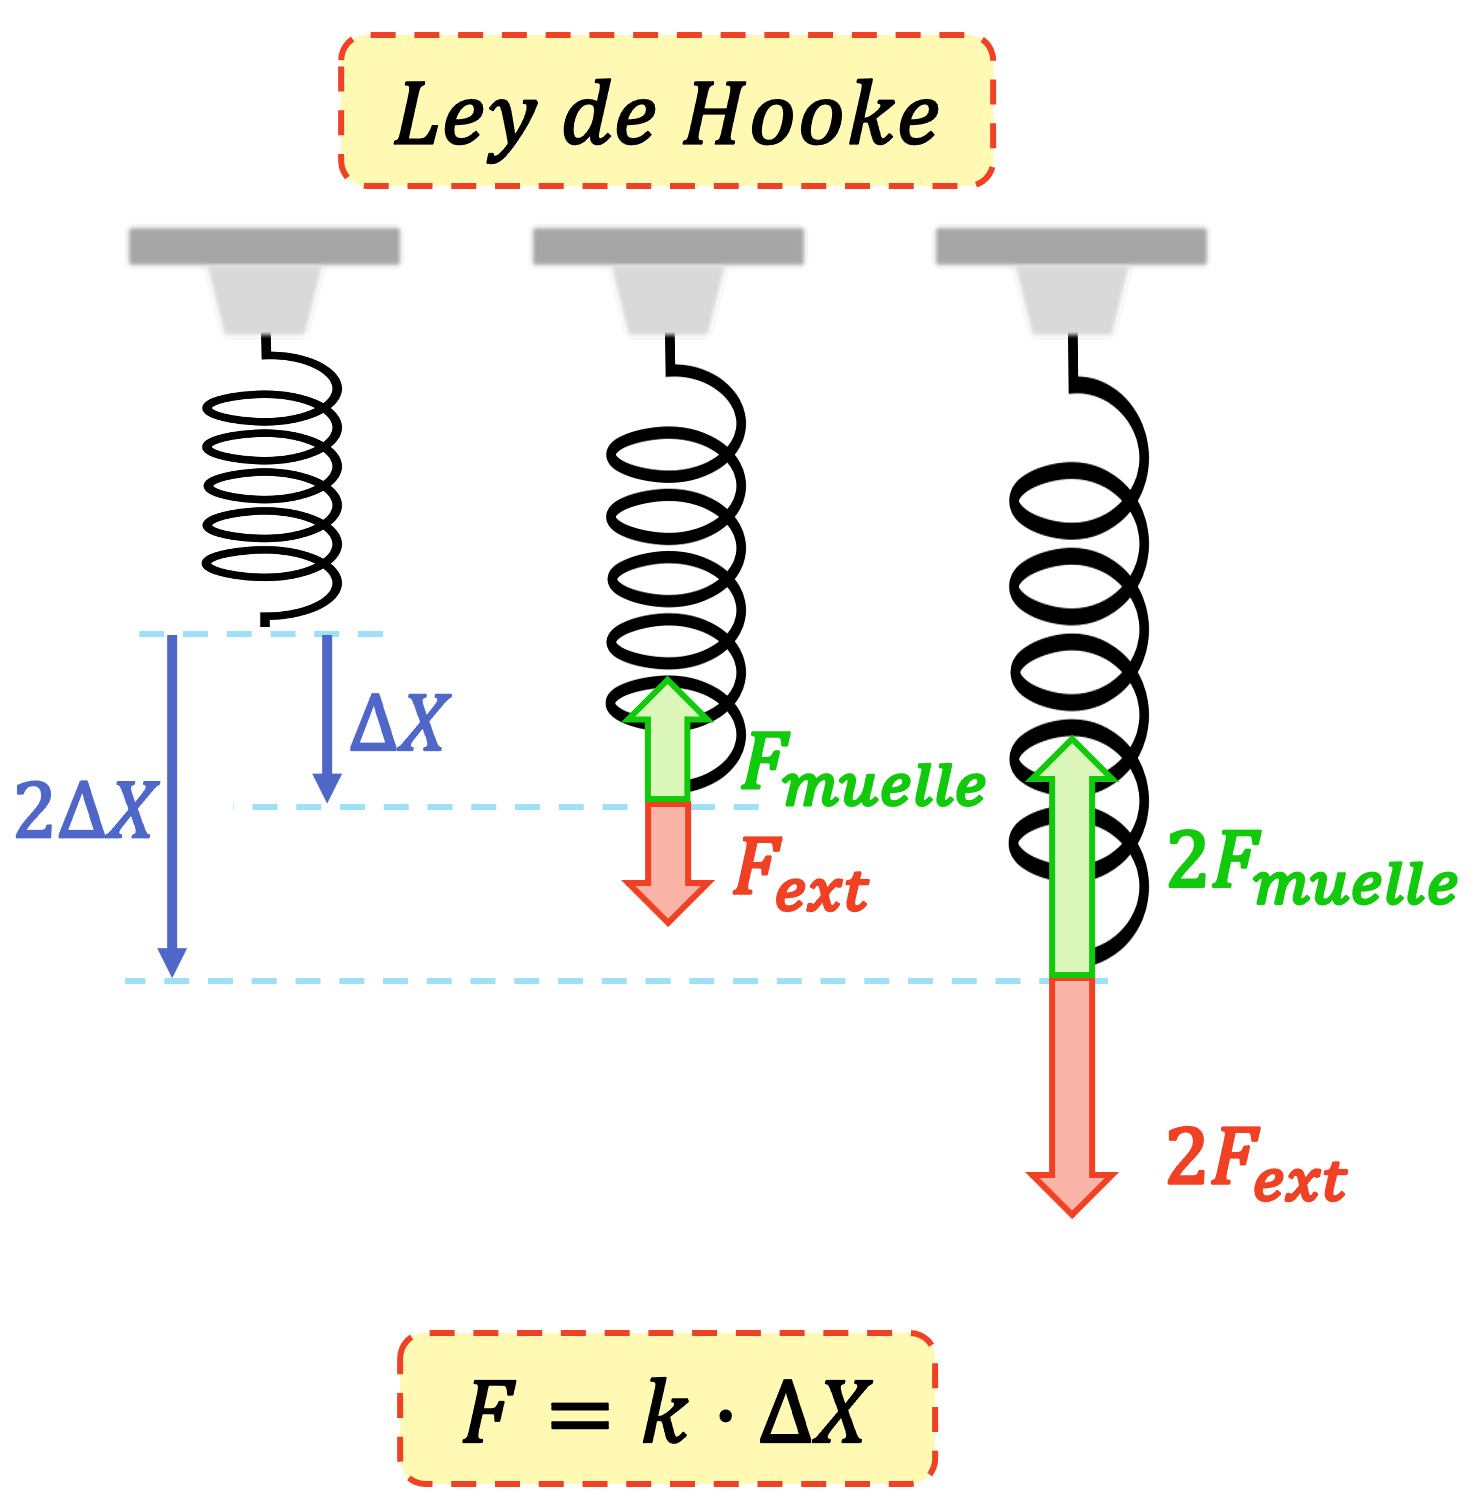 La legge di Hooke